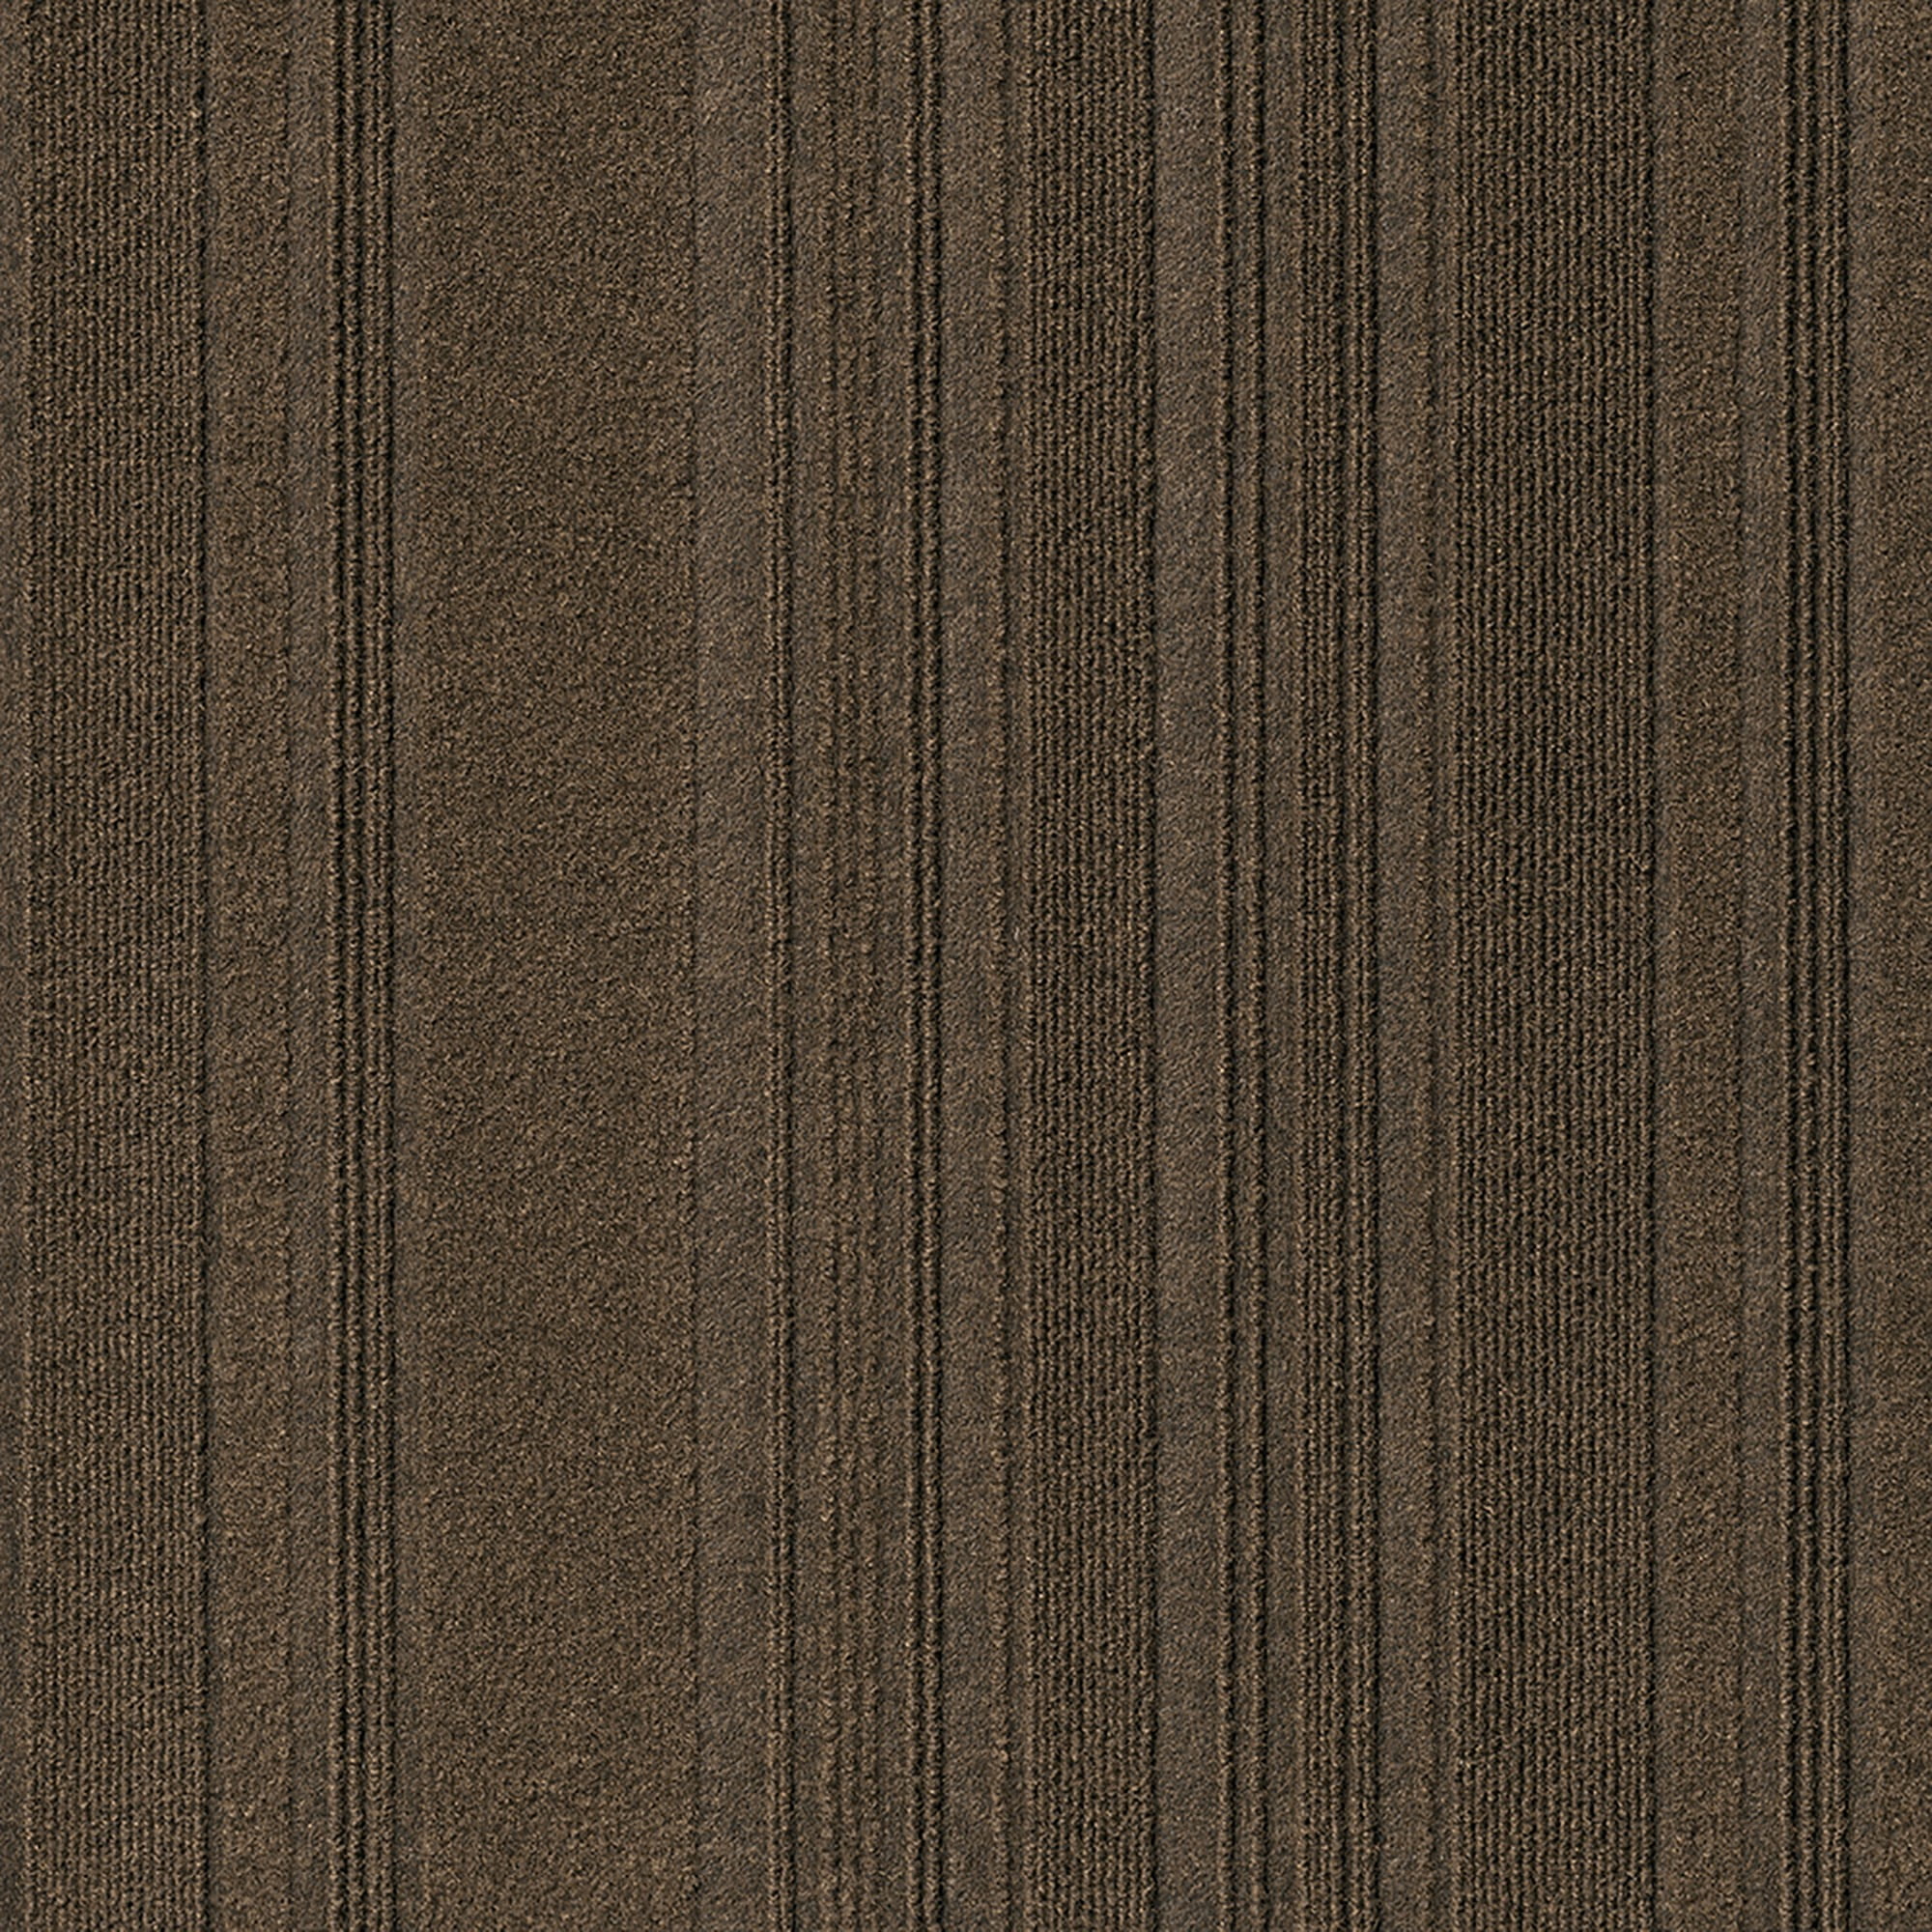 Shuffle Shadow Carpet Tiles - 24 x 24 Indoor/Outdoor, Peel and